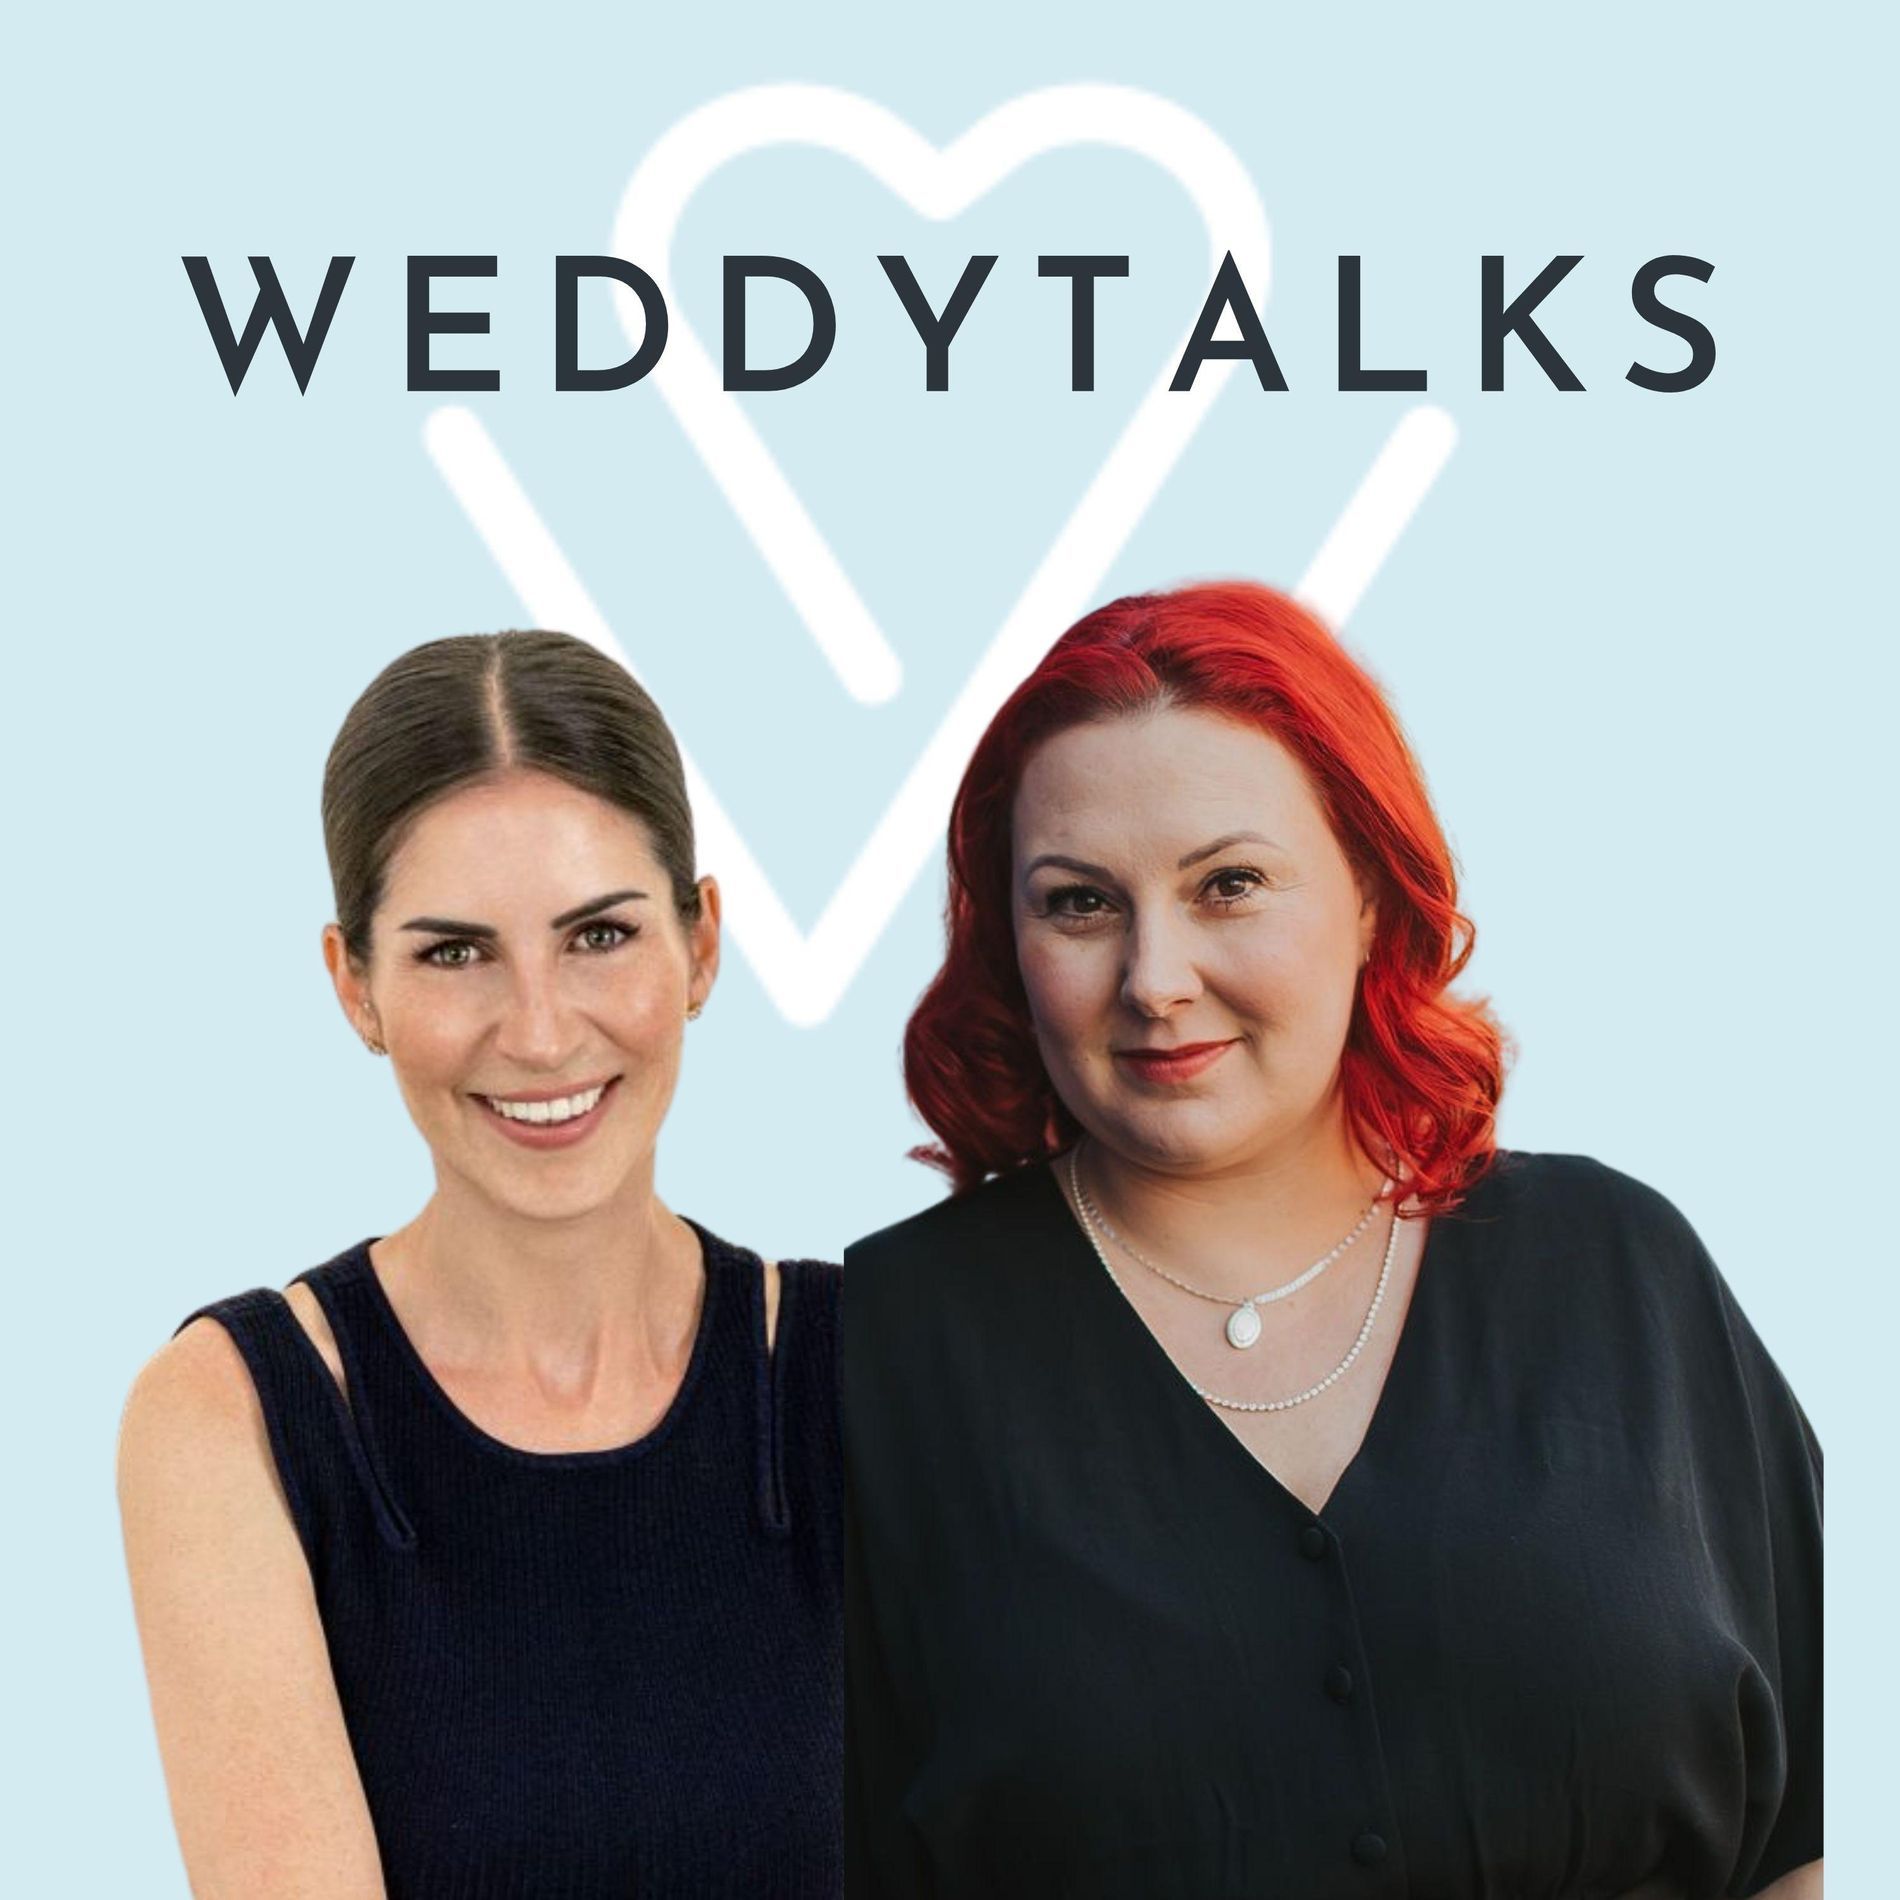 Zwei Frauen stehen vor einem blauen Hintergrund mit den Worten Weddytalks.